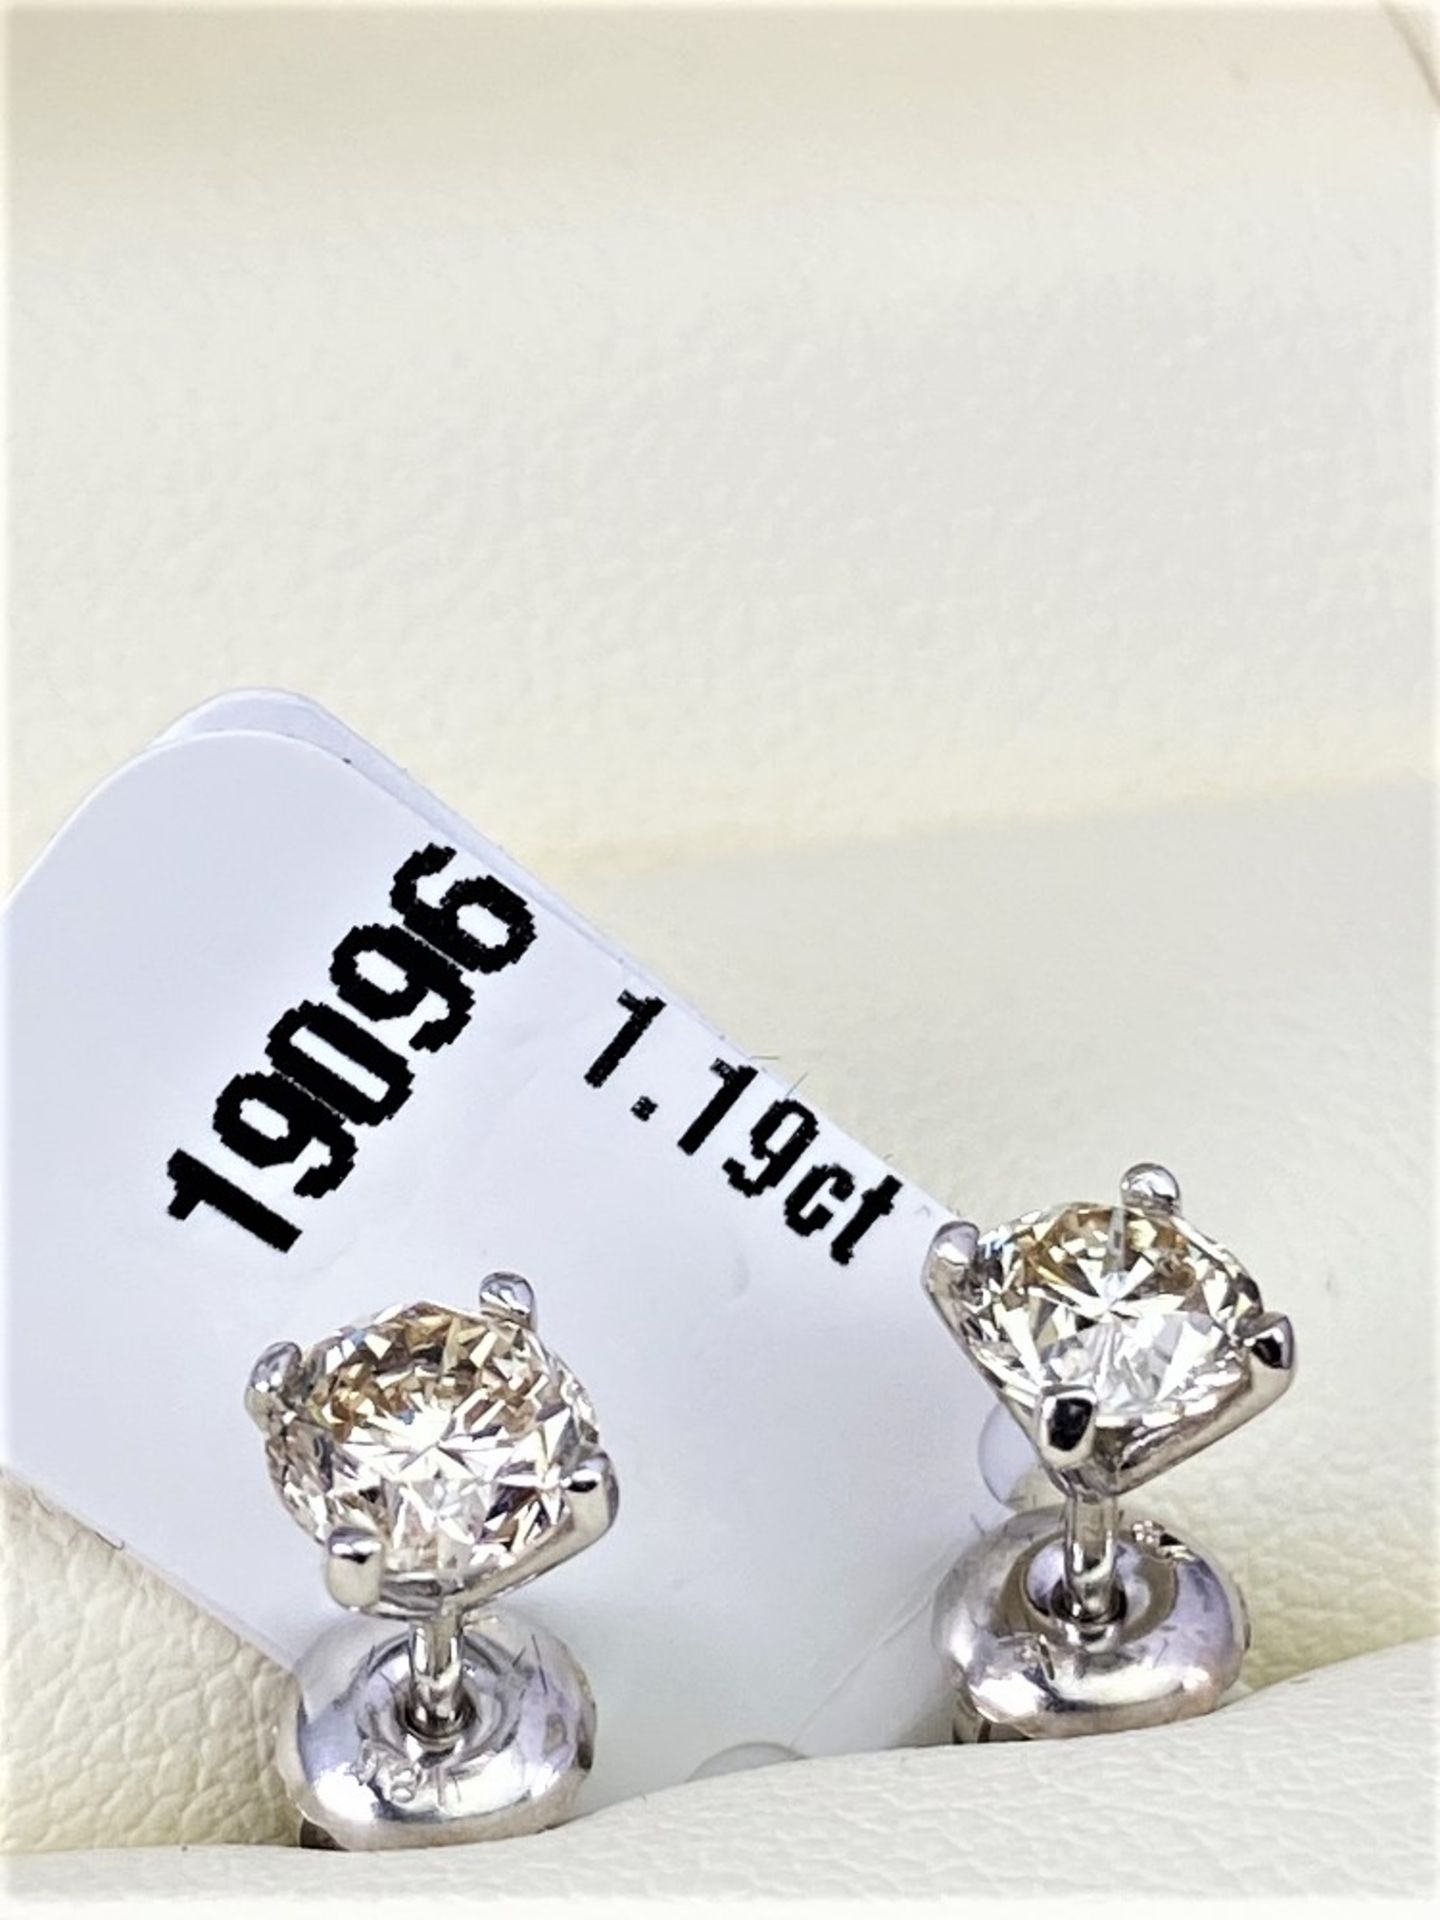 Pair of New 1.19 Carat Round Cut VVS2/D Diamond Earrings